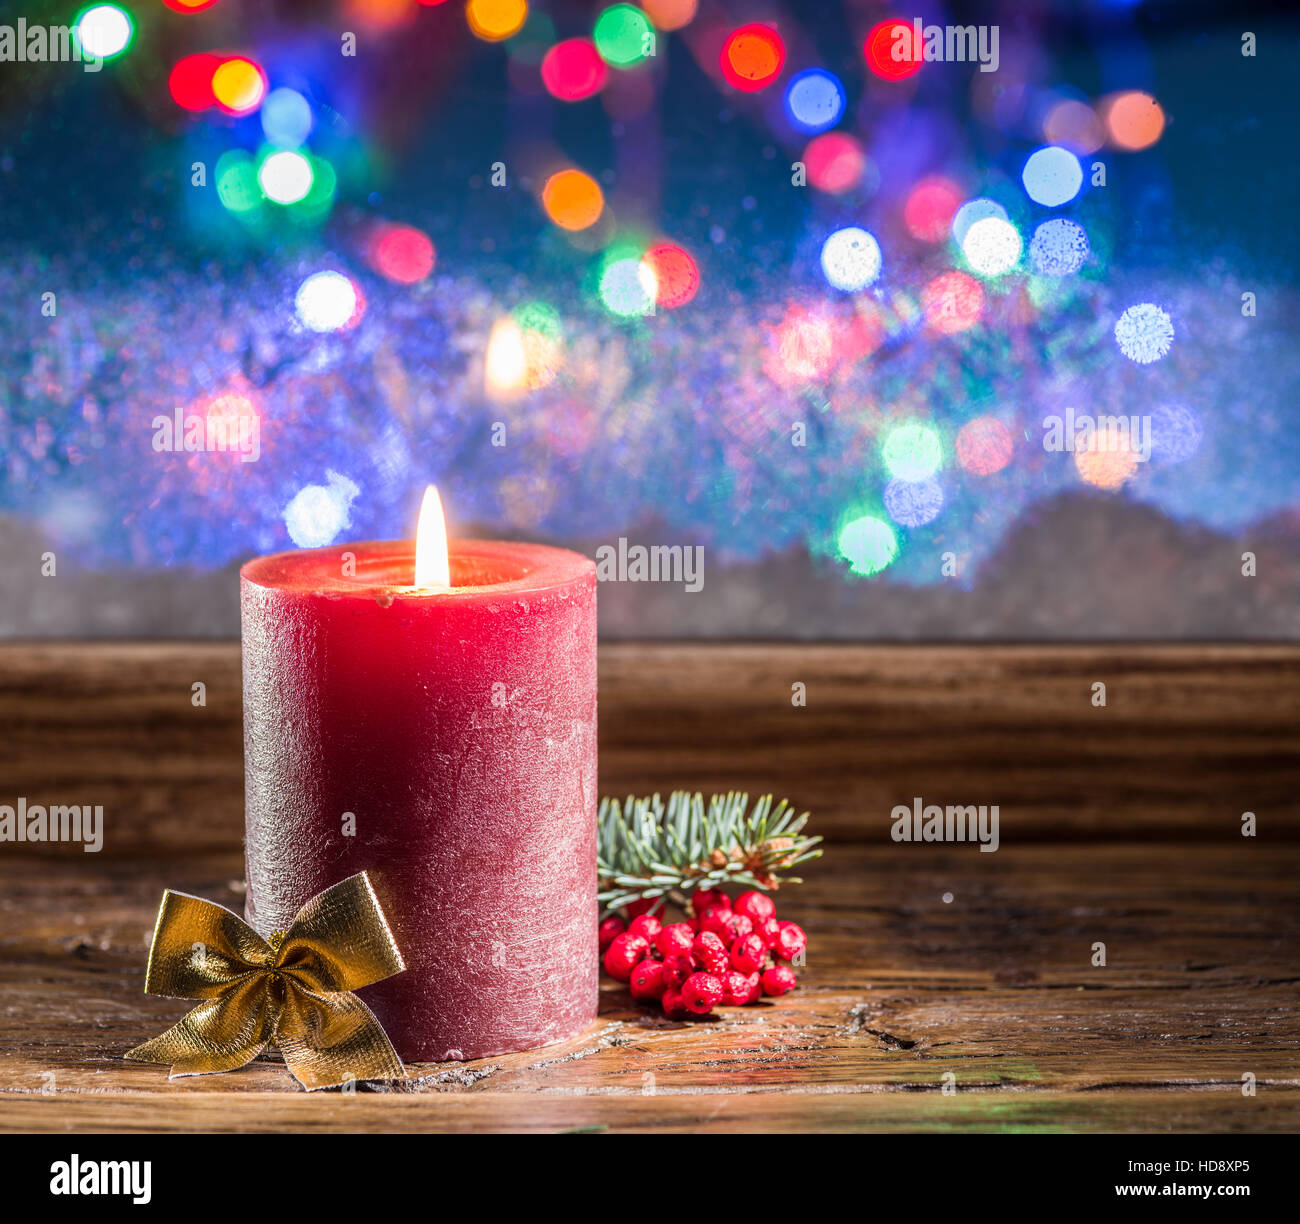 Cajas de Regalo, la luz de las velas y ventana congelada. Fondo de Navidad. Foto de stock